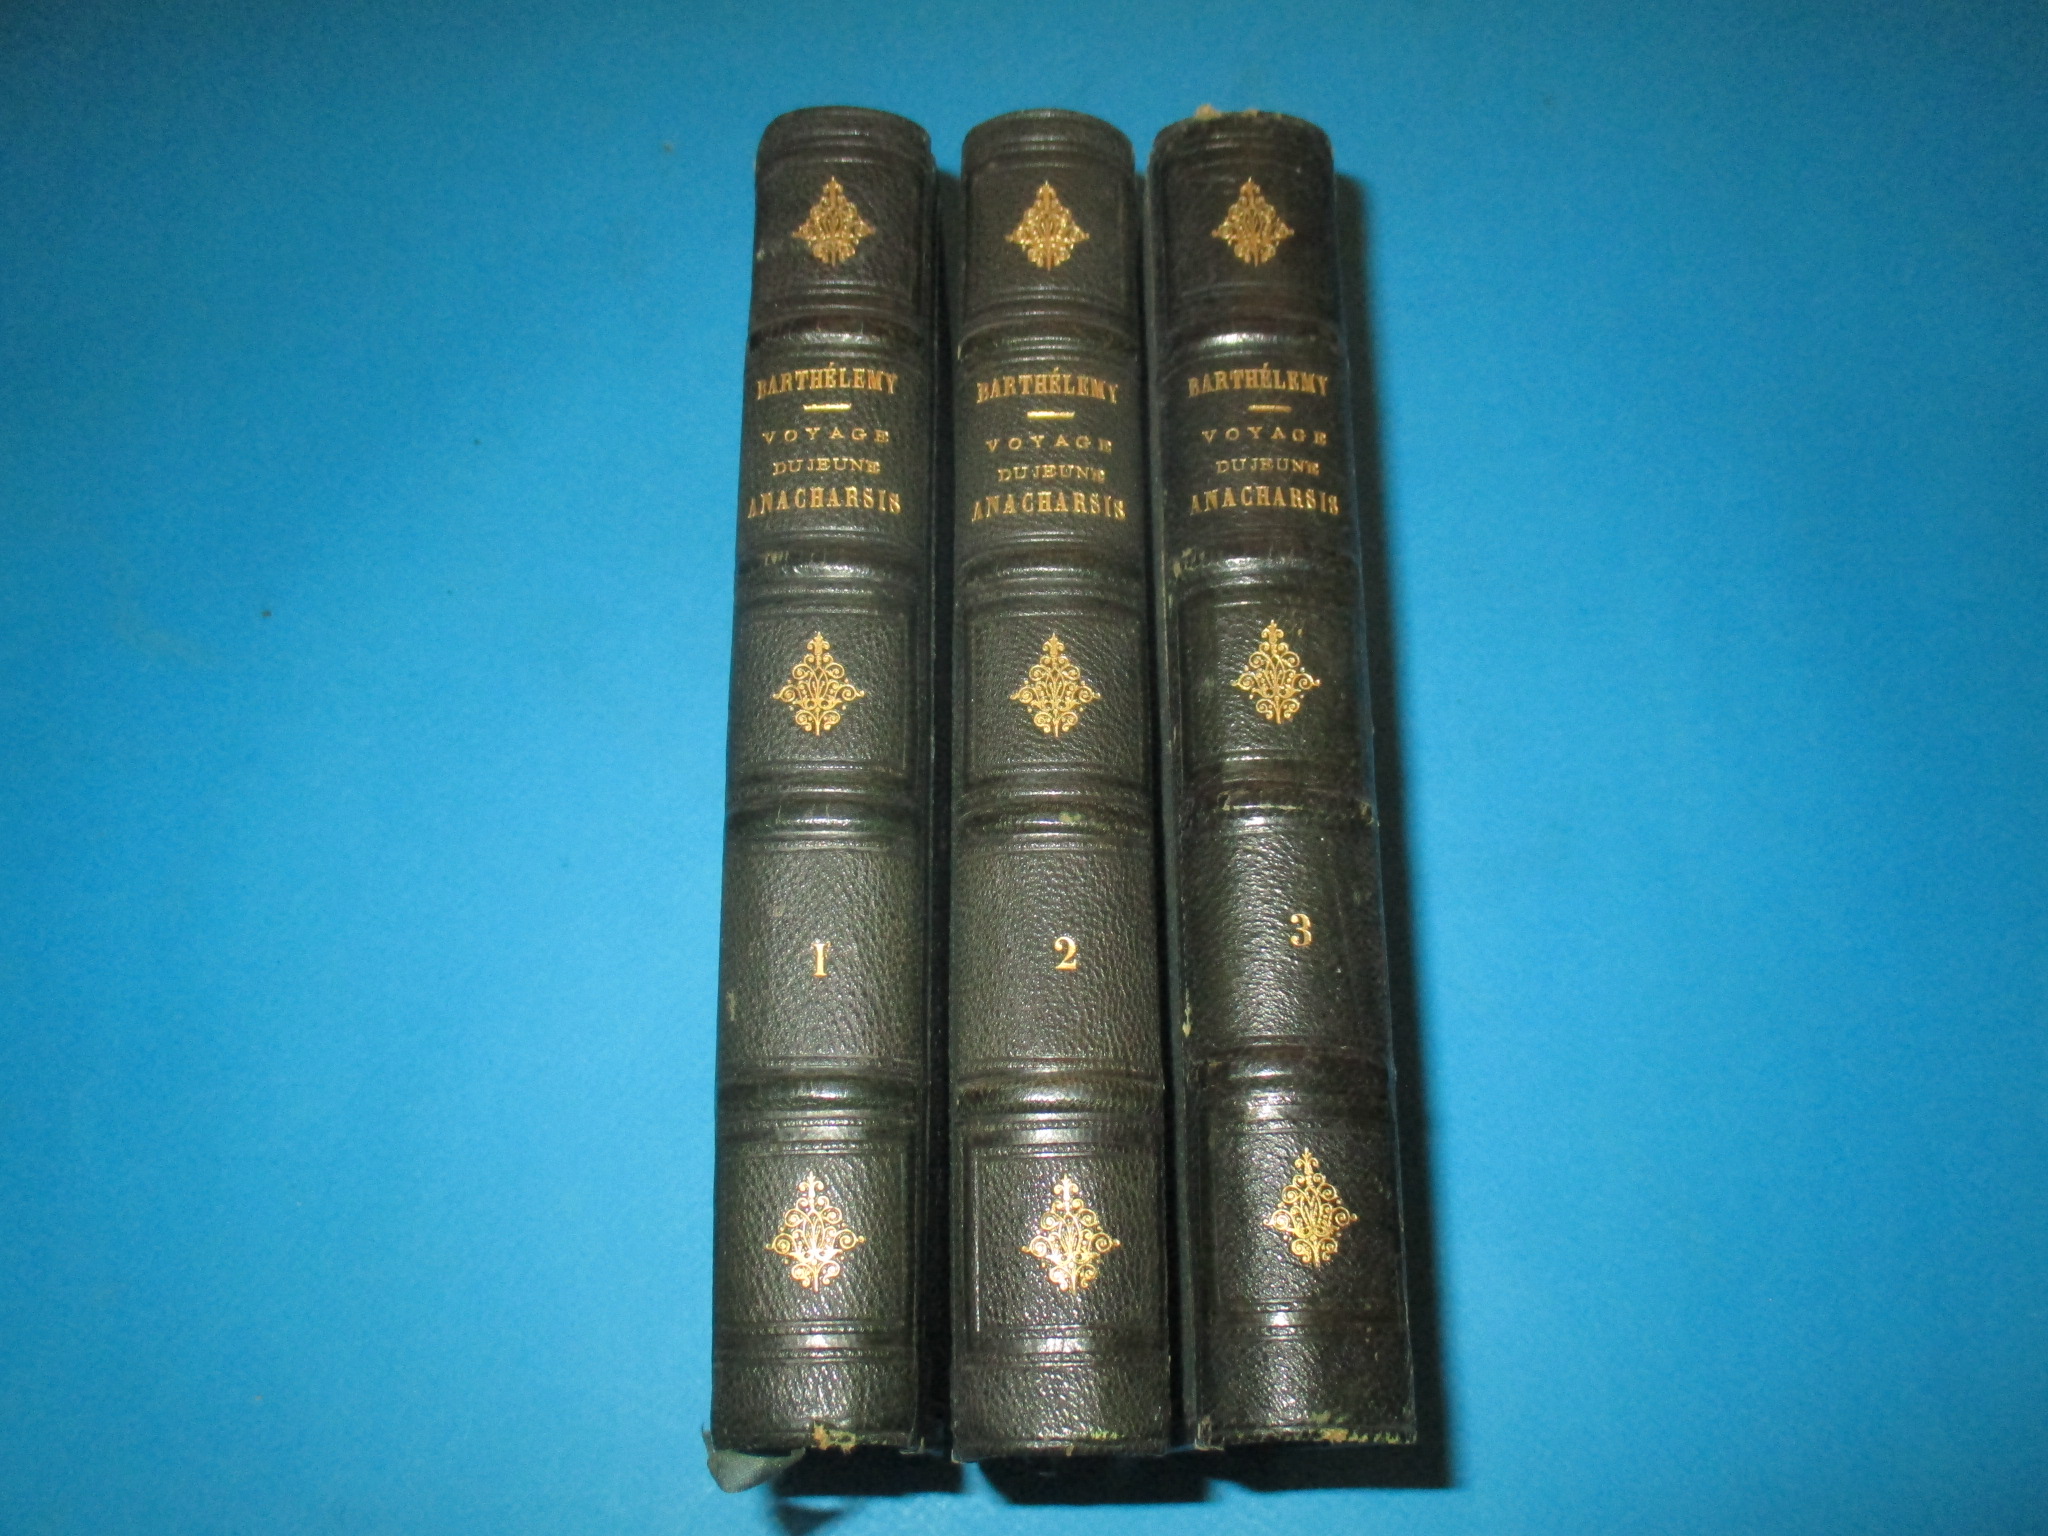 Voyage du jeune Anacharsis en Grèce dans le milieu du quatrième siècle par Barthélemy, 3 volumes, tomes 1 à 3, Hachette 1860